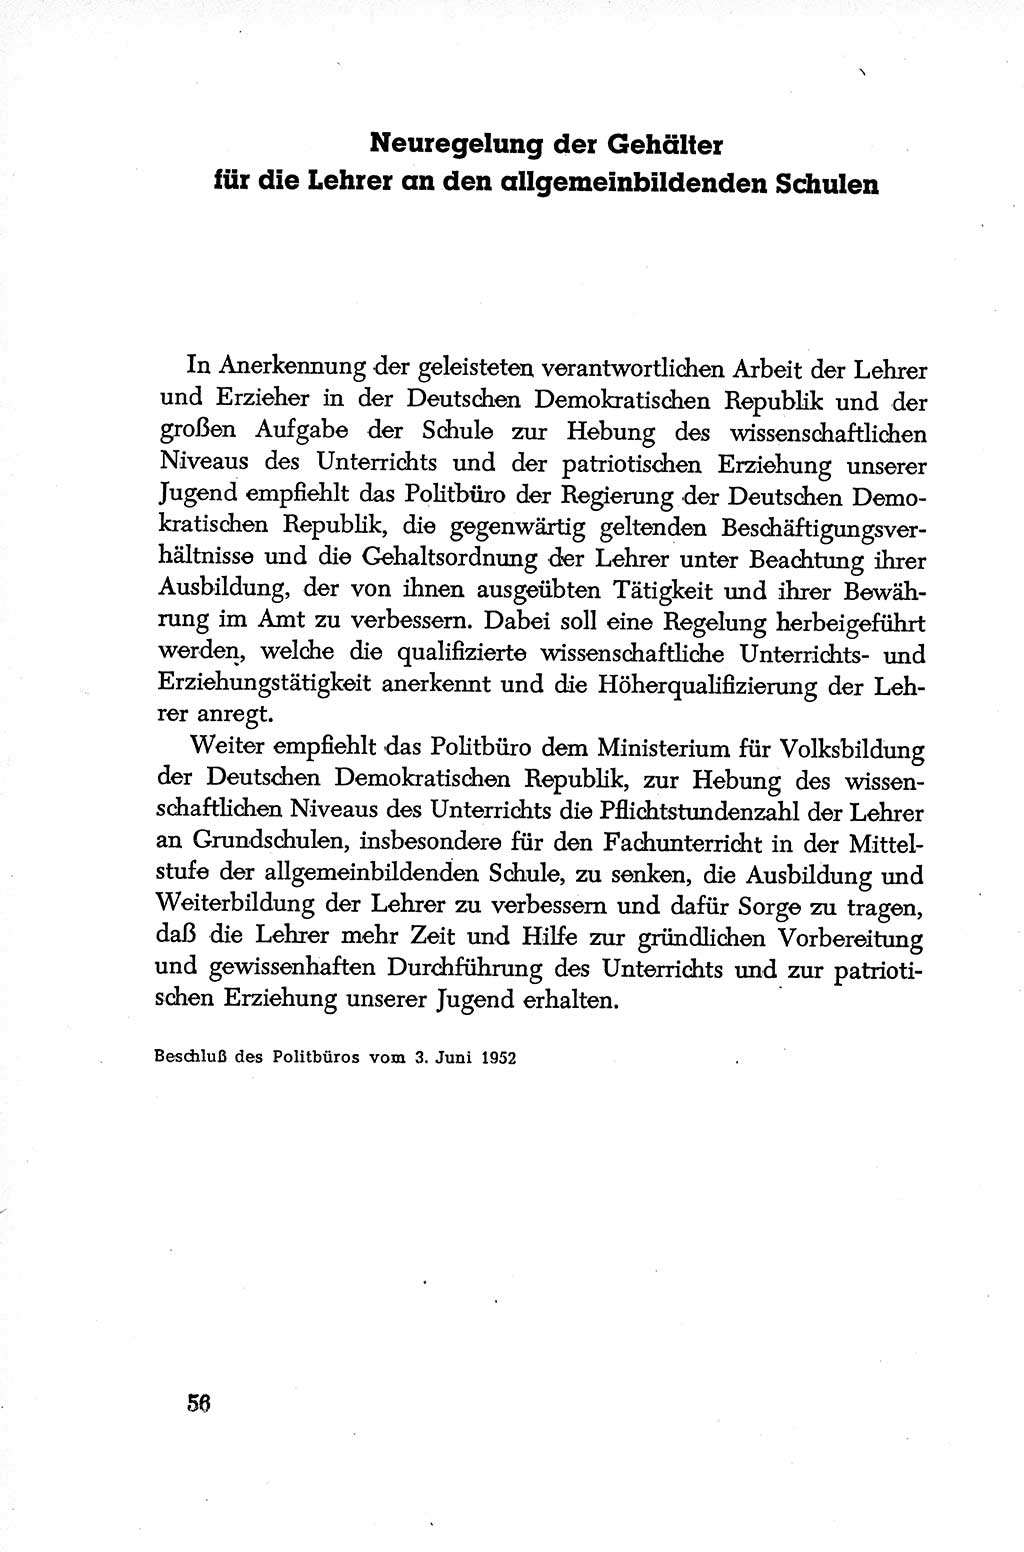 Dokumente der Sozialistischen Einheitspartei Deutschlands (SED) [Deutsche Demokratische Republik (DDR)] 1952-1953, Seite 56 (Dok. SED DDR 1952-1953, S. 56)